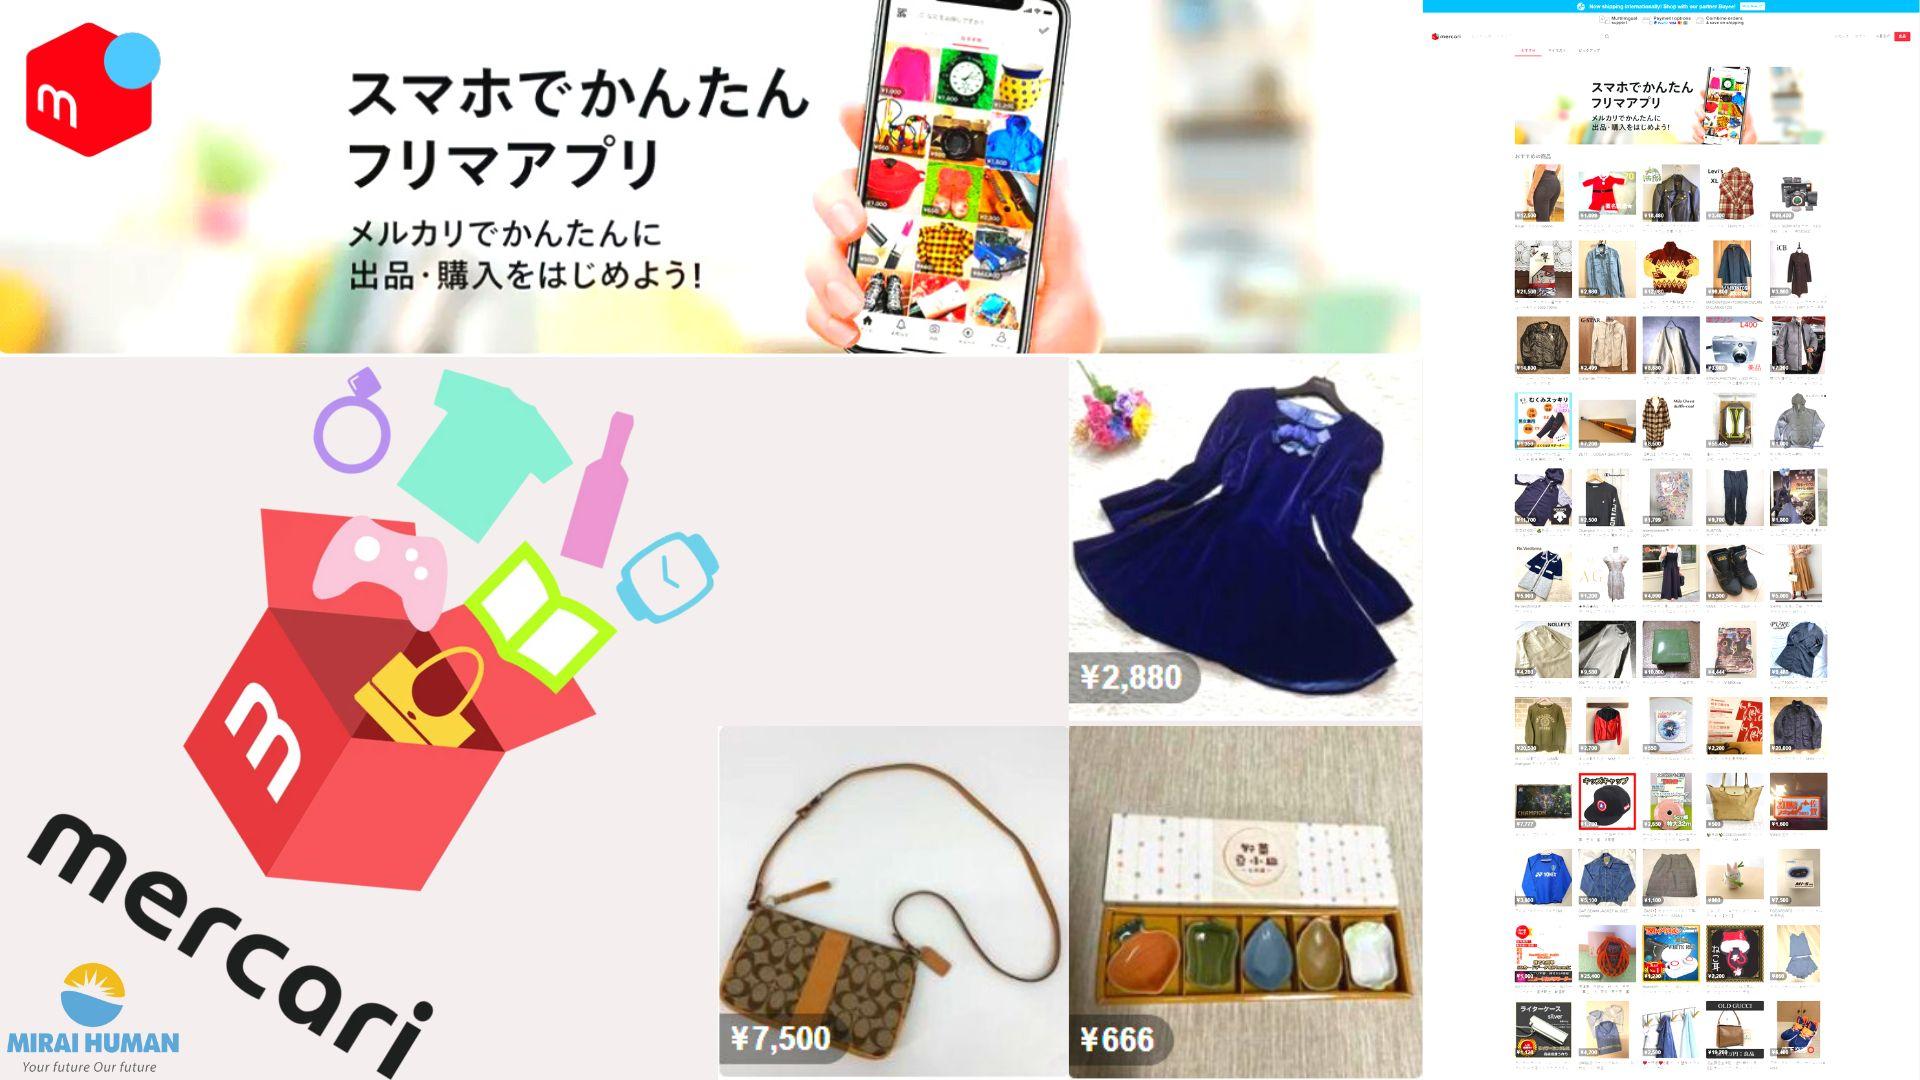 Mercari - Trang web mua bán hàng secondhand tại Nhật